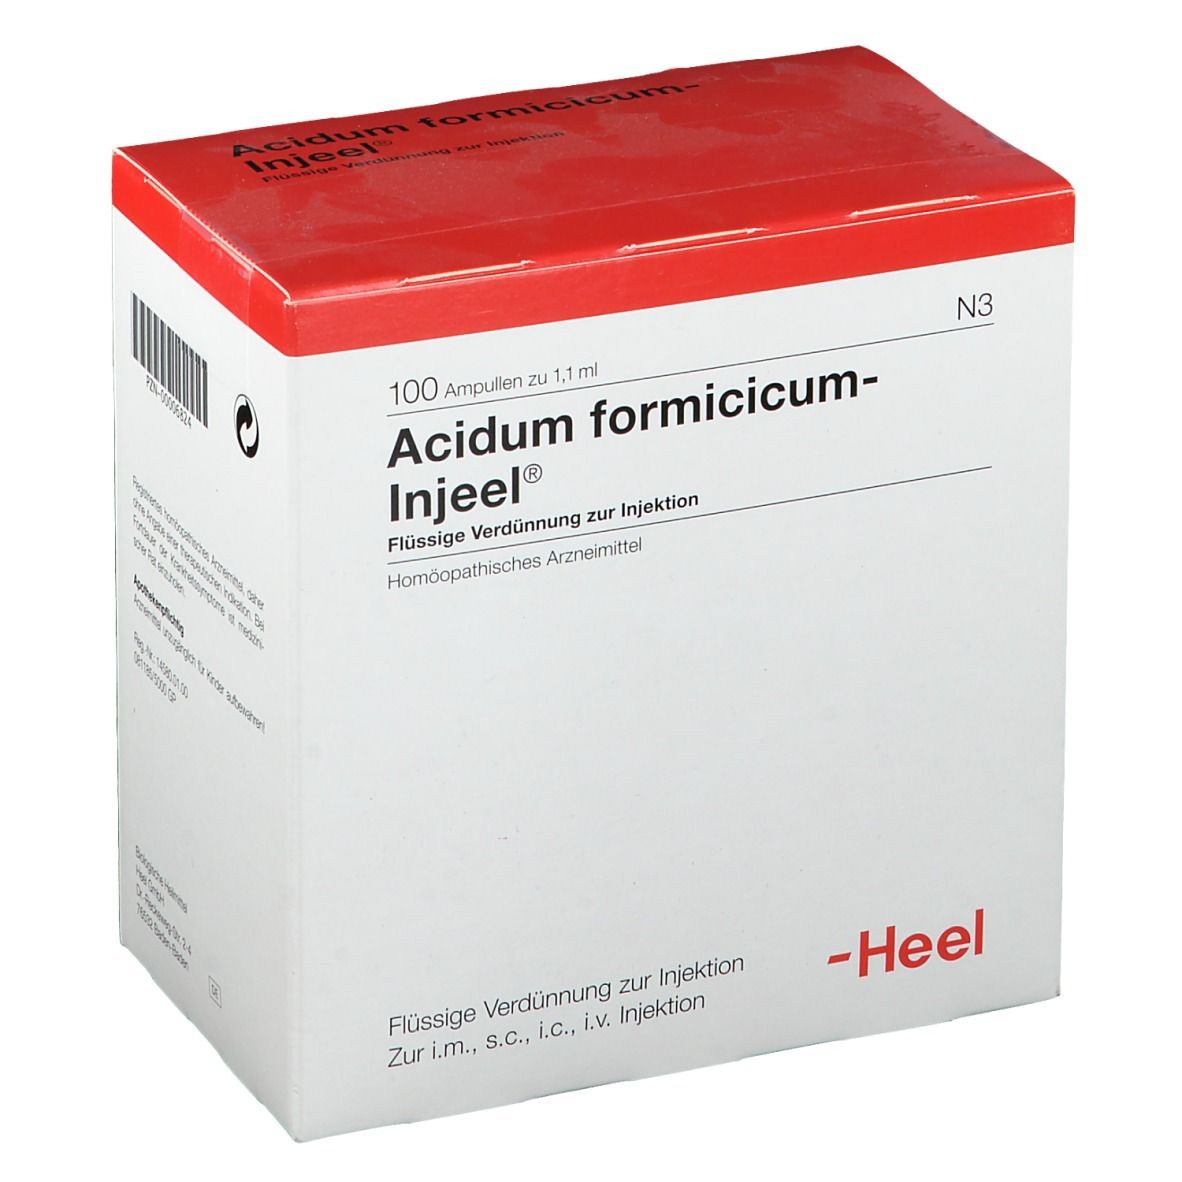 Acidum formicicum-Injeel® Ampullen